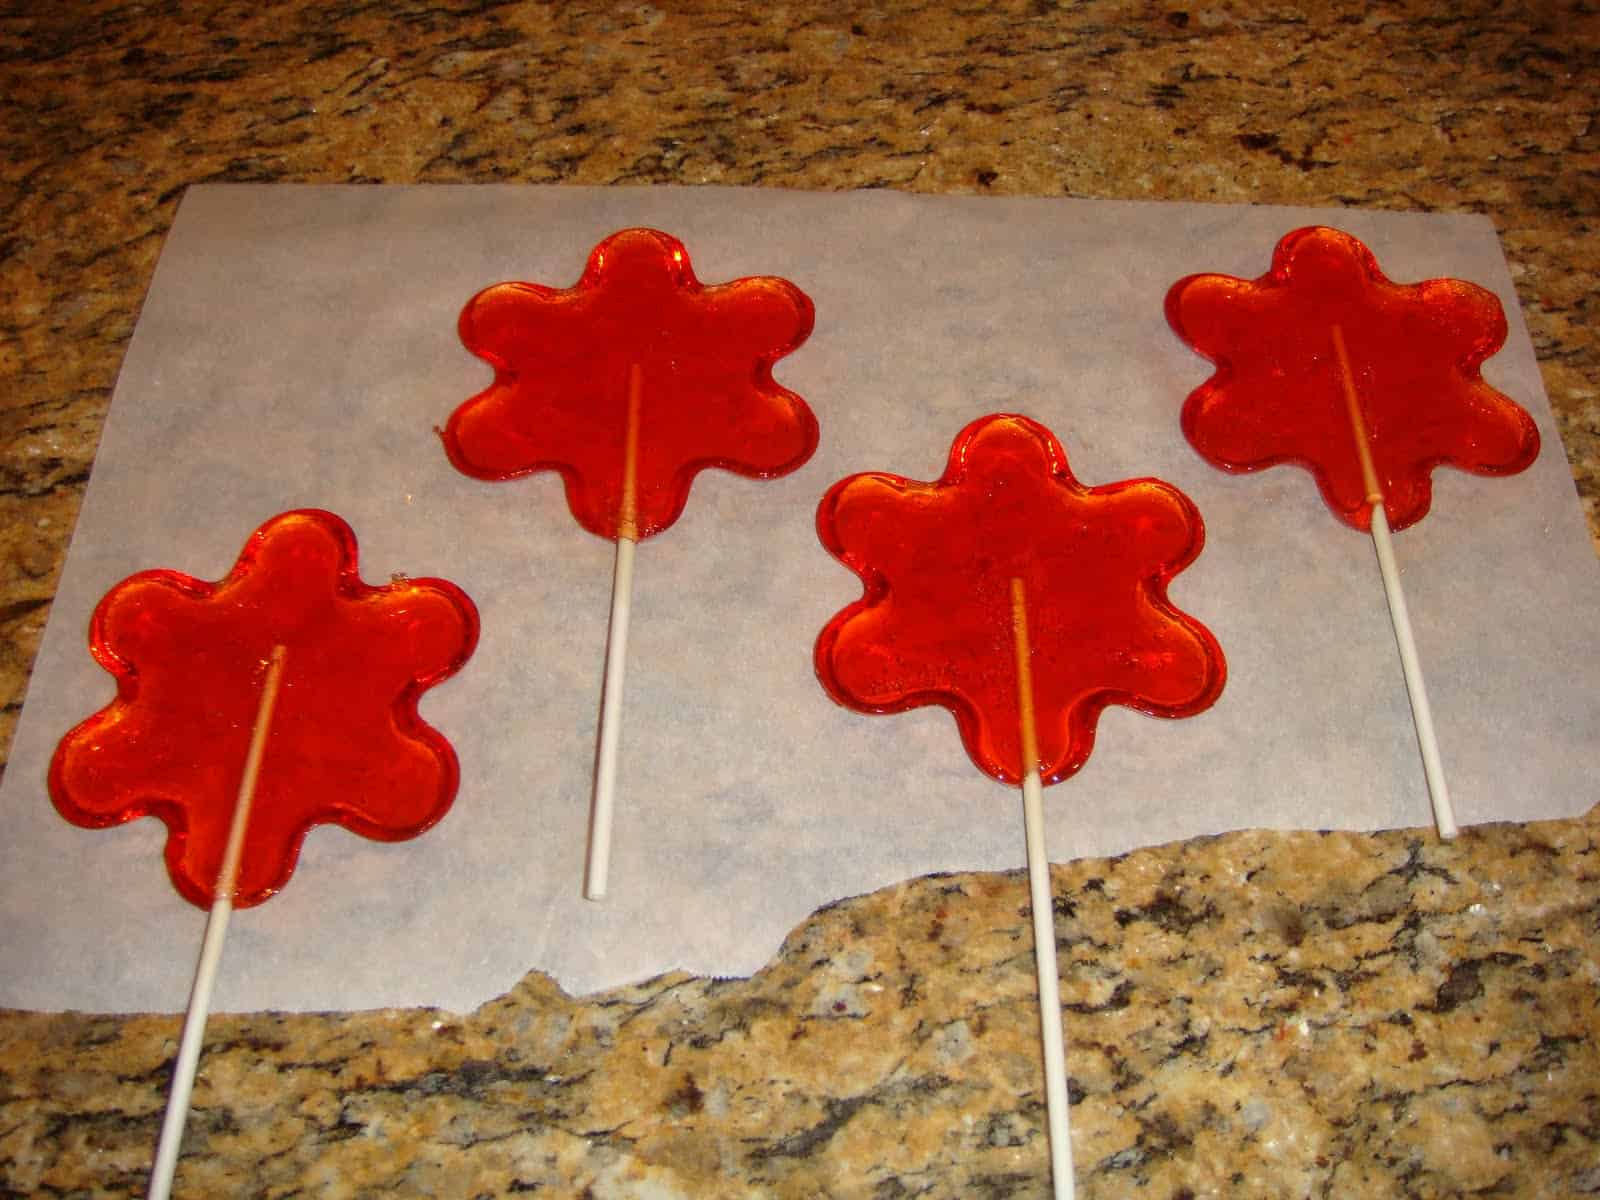 Star shaped lollipops